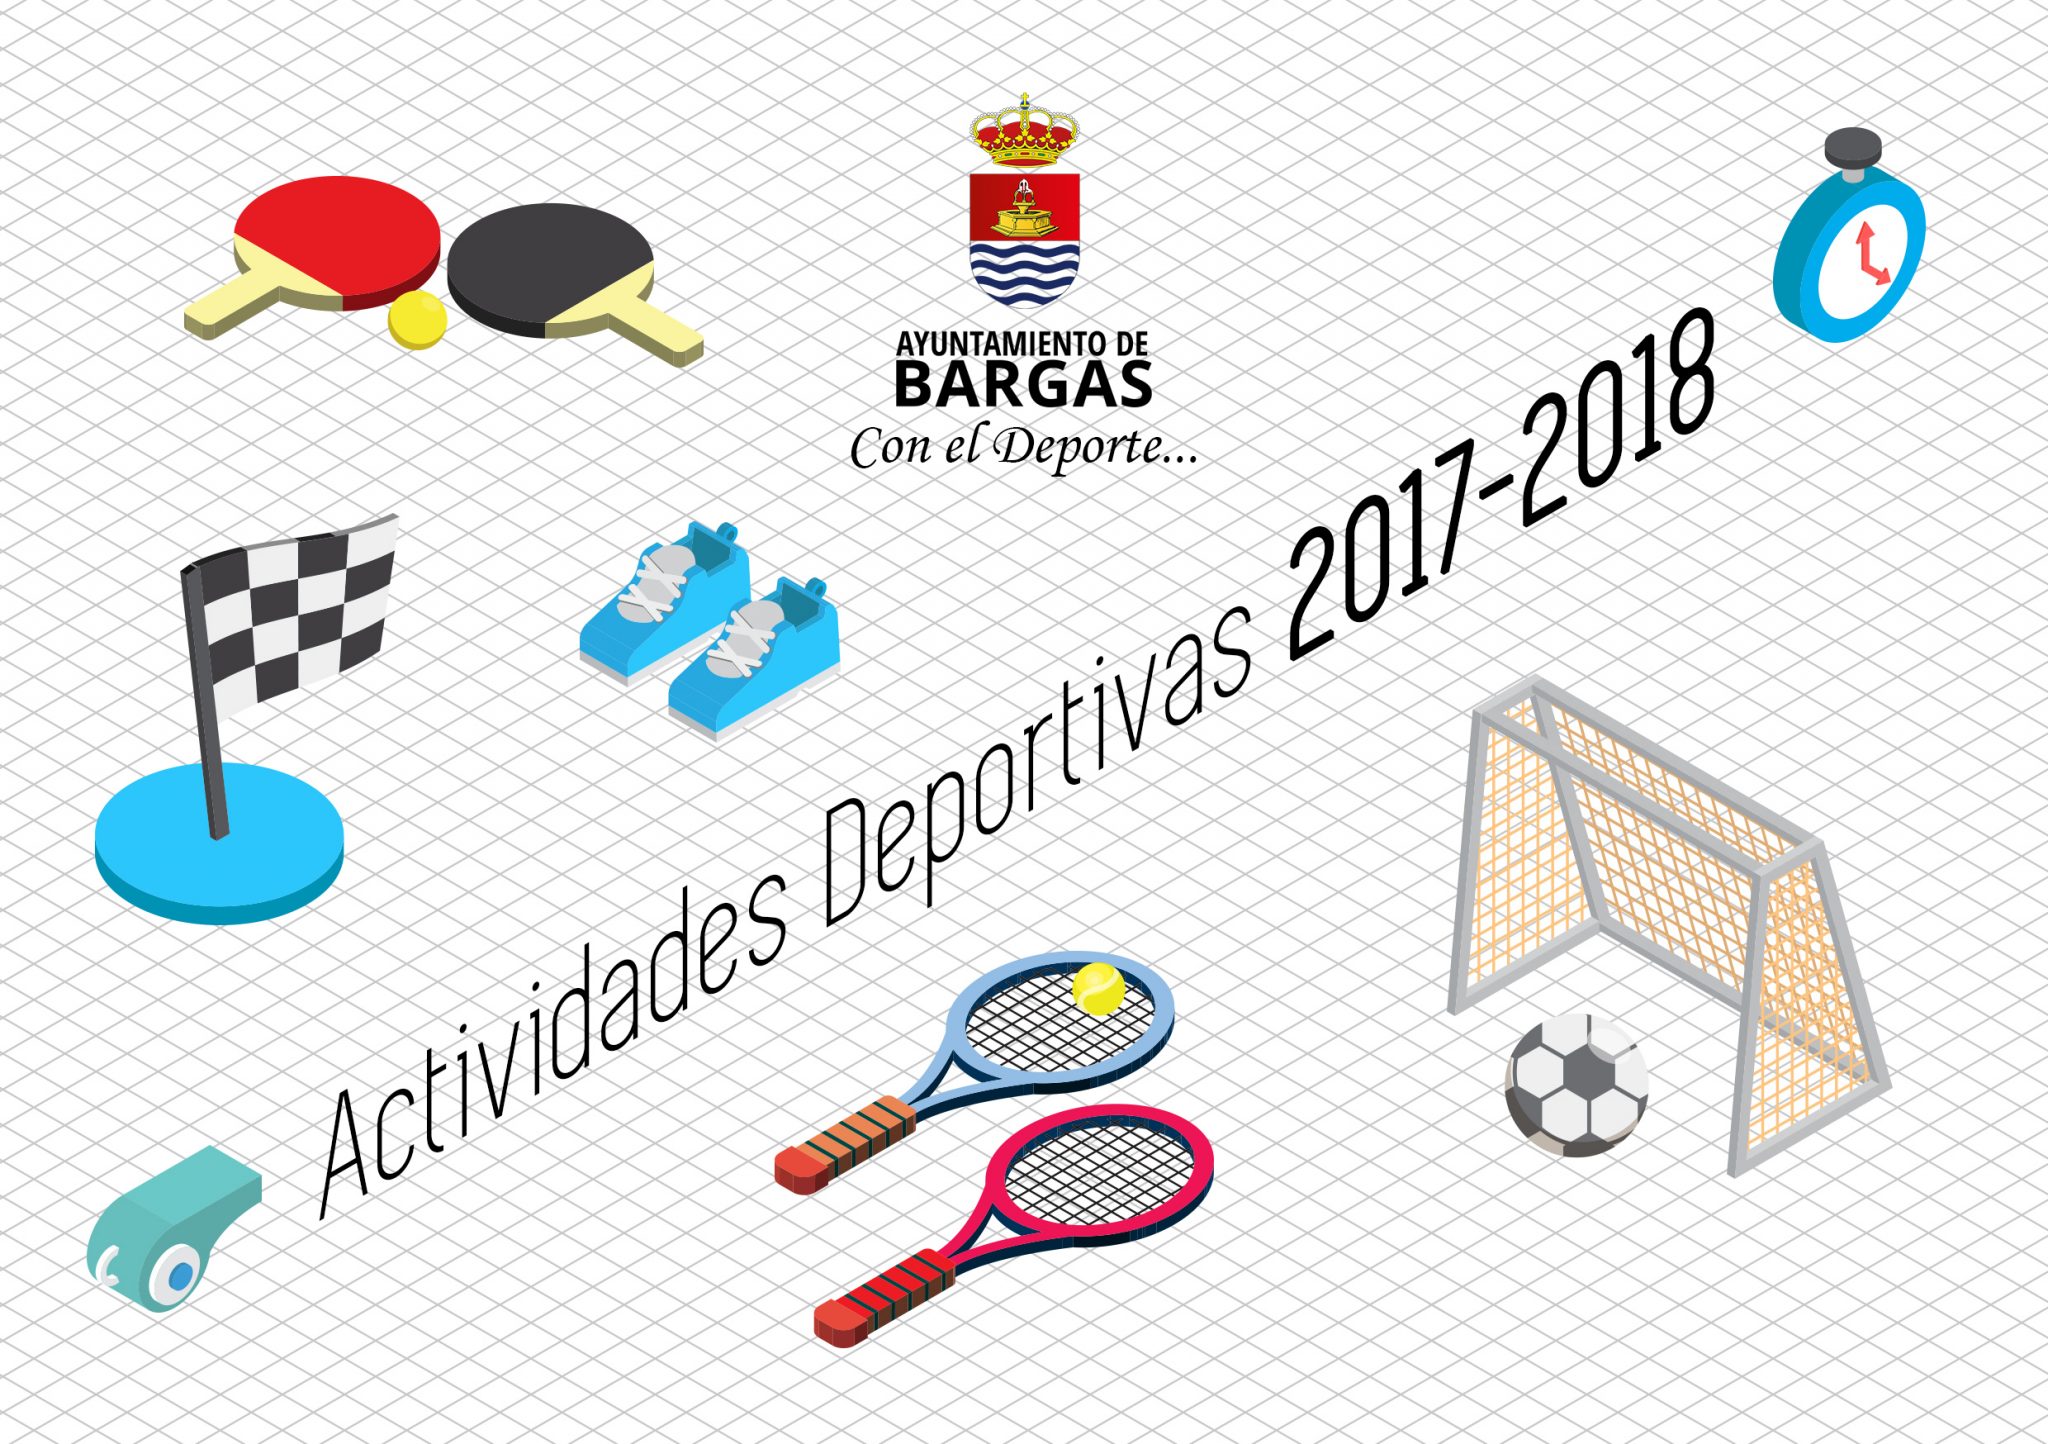 Actividades Deportivas 2017-2018 | Ampliado el plazo de inscripción hasta el 31 de julio